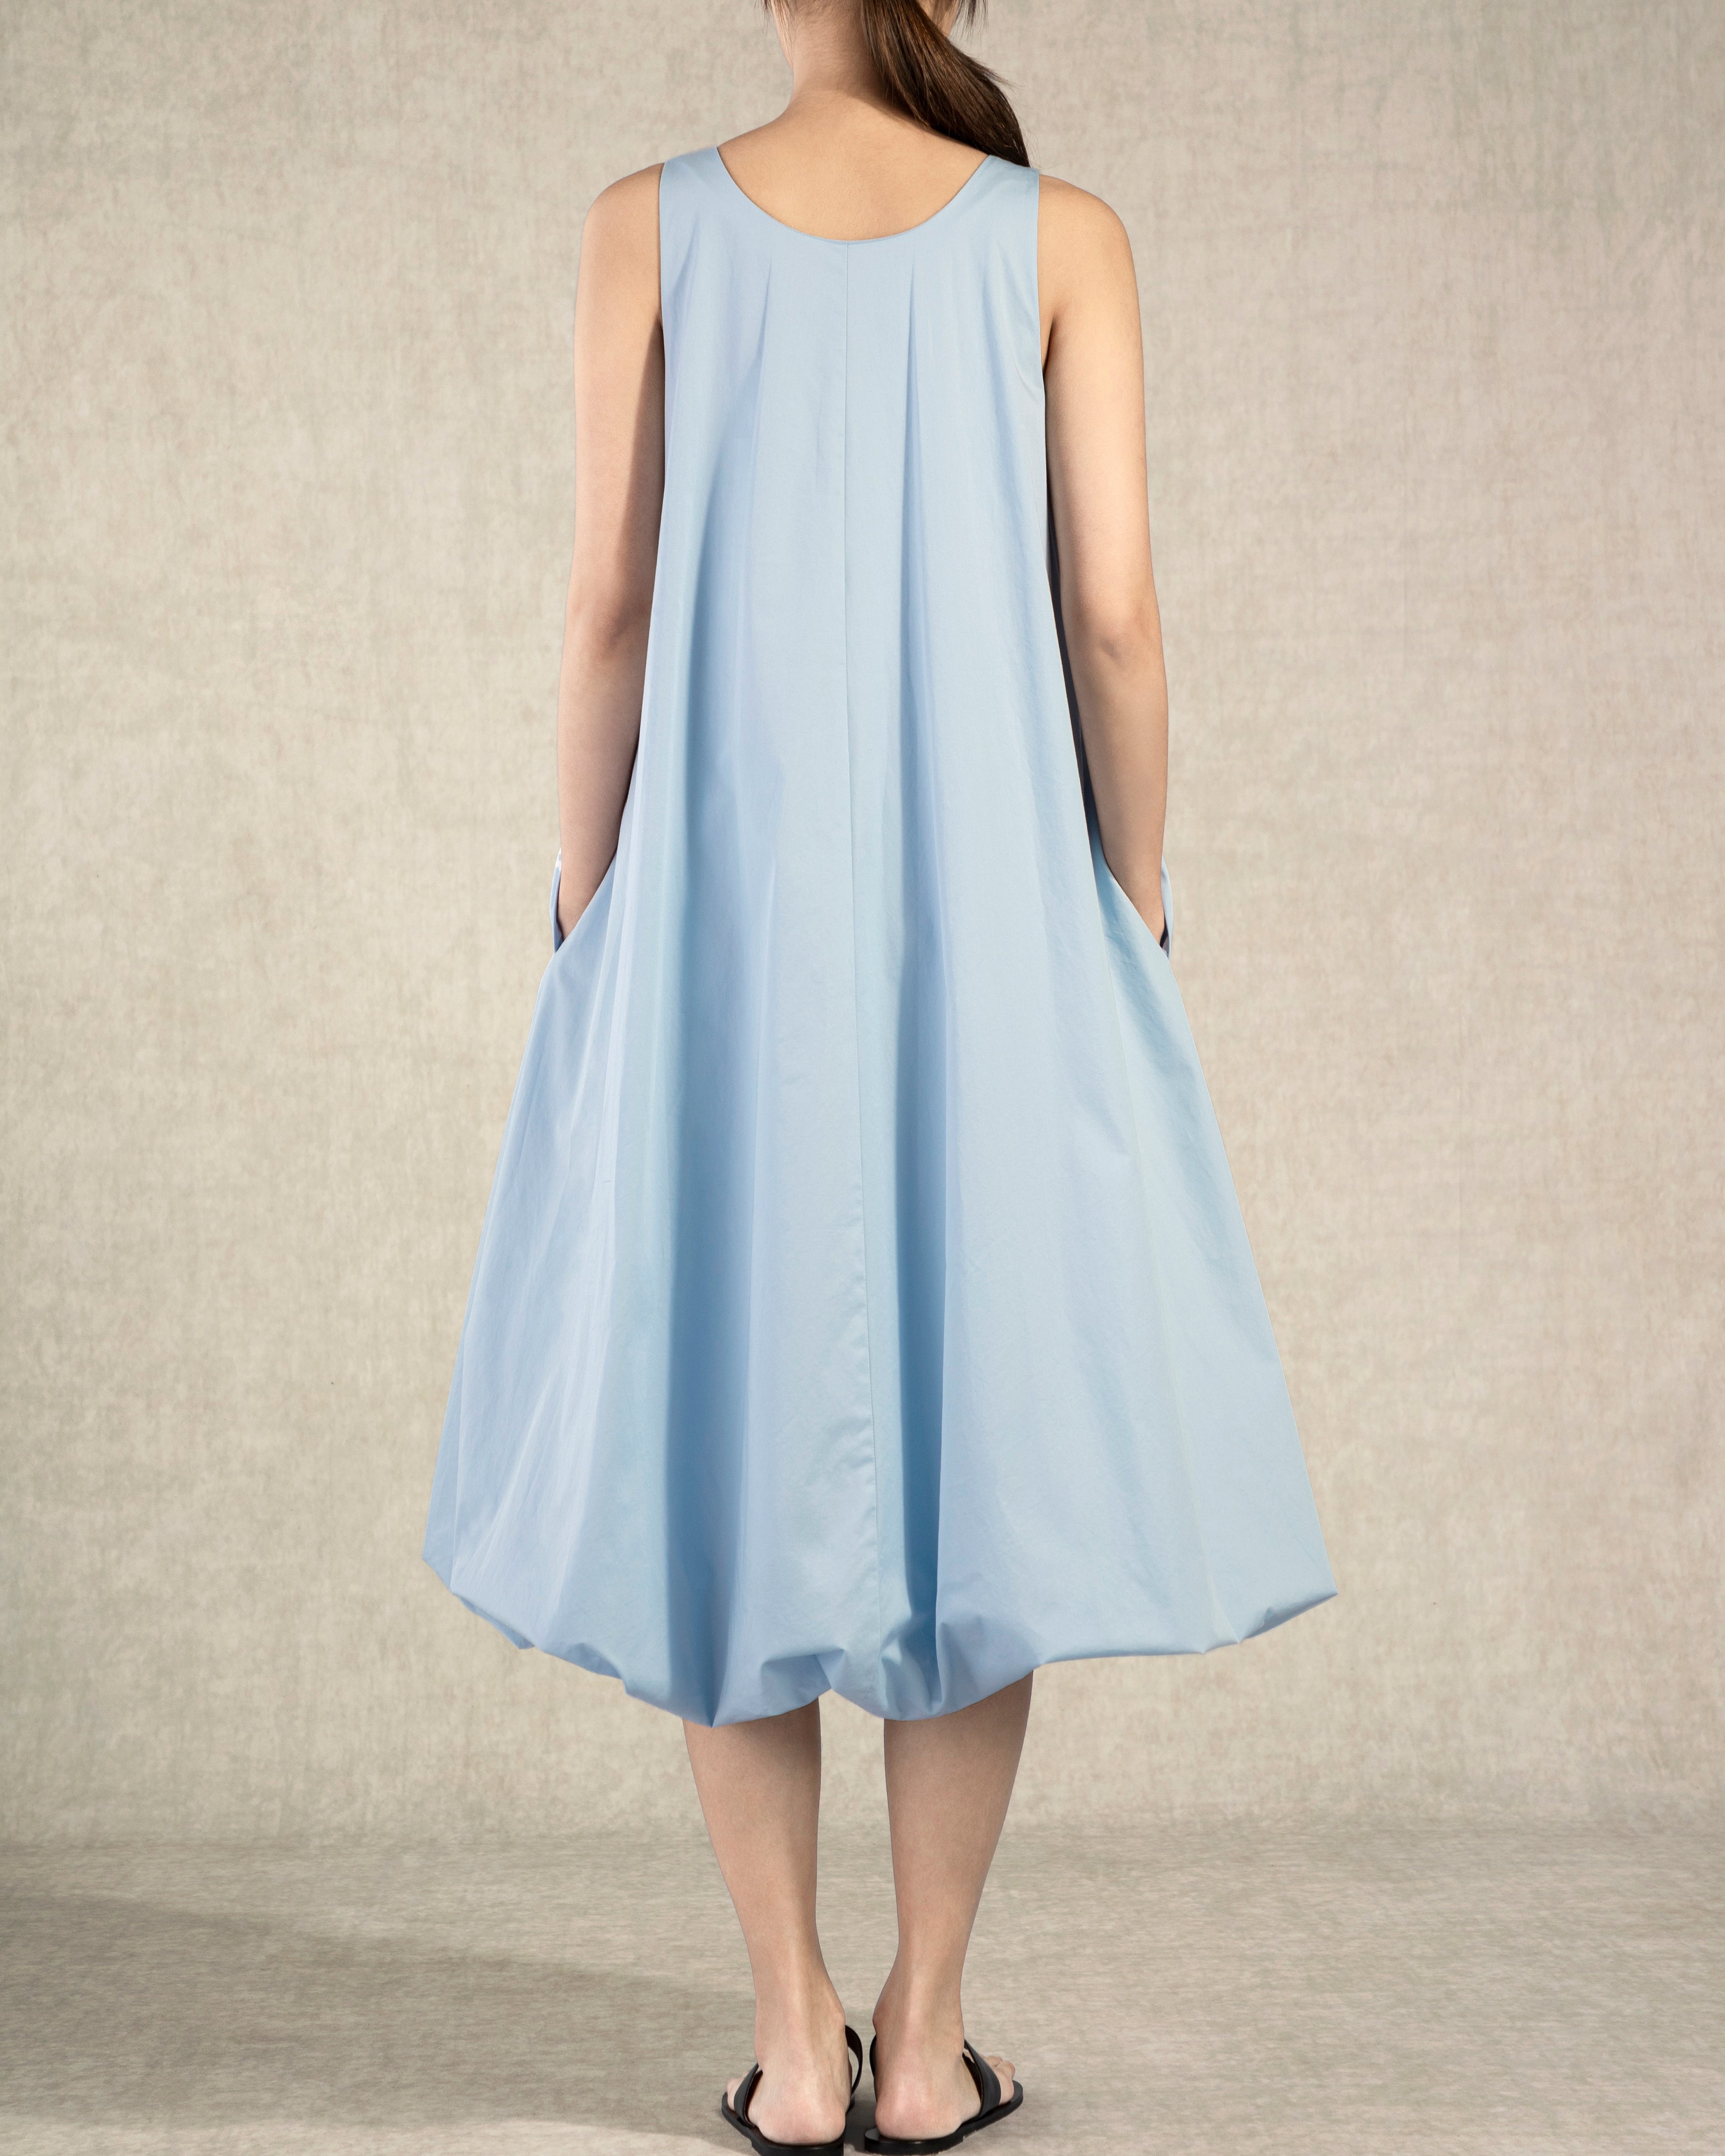 Light Blue Balloon Dress Womens Future Classics Summer Pocketed Dress